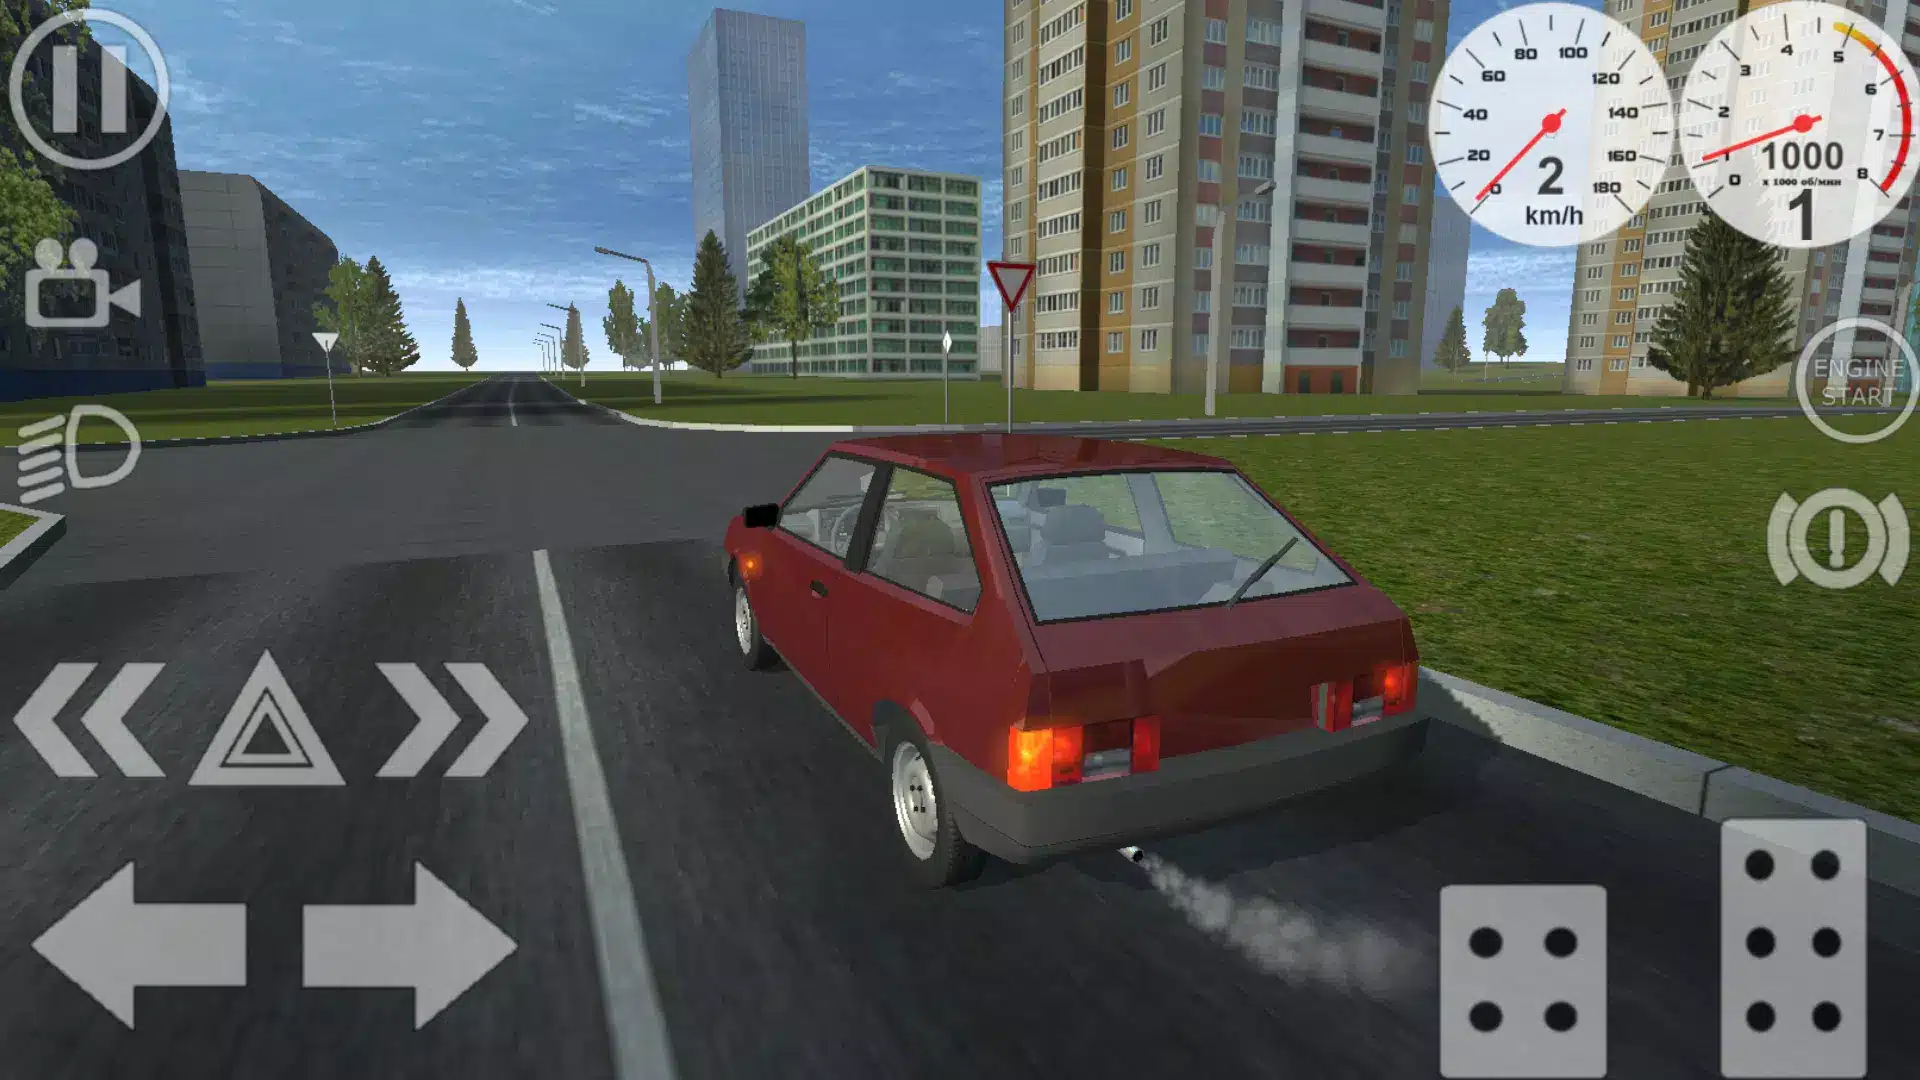 Simple Car Crash Physics Sim Image 6